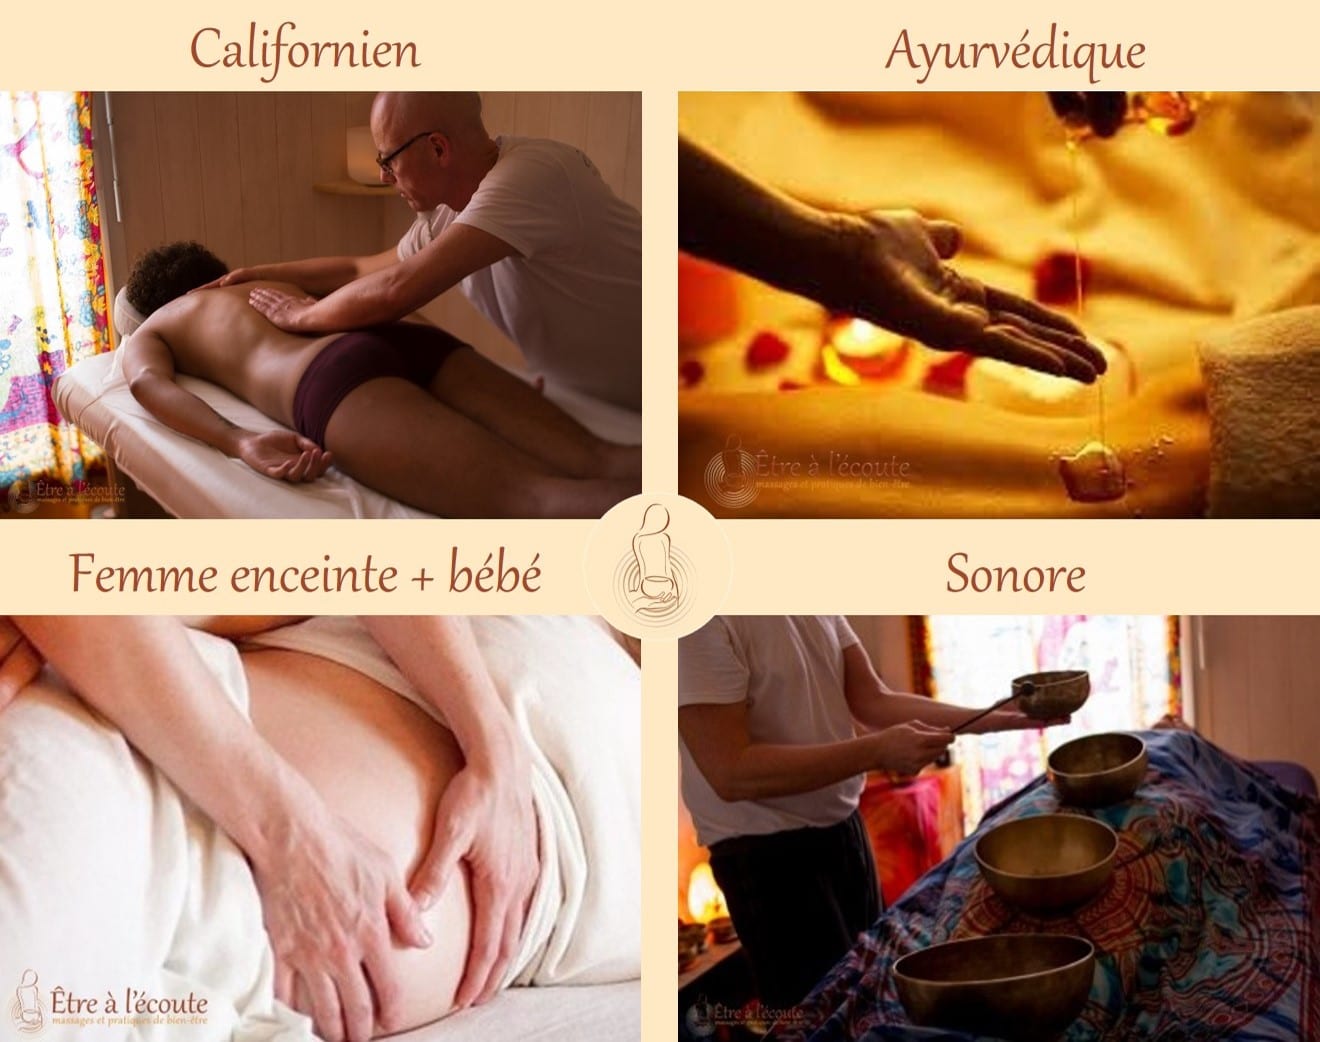 Être à l'écoute : Formations massages - Californien - Ayurvédique - Femme enceinte - Sonore